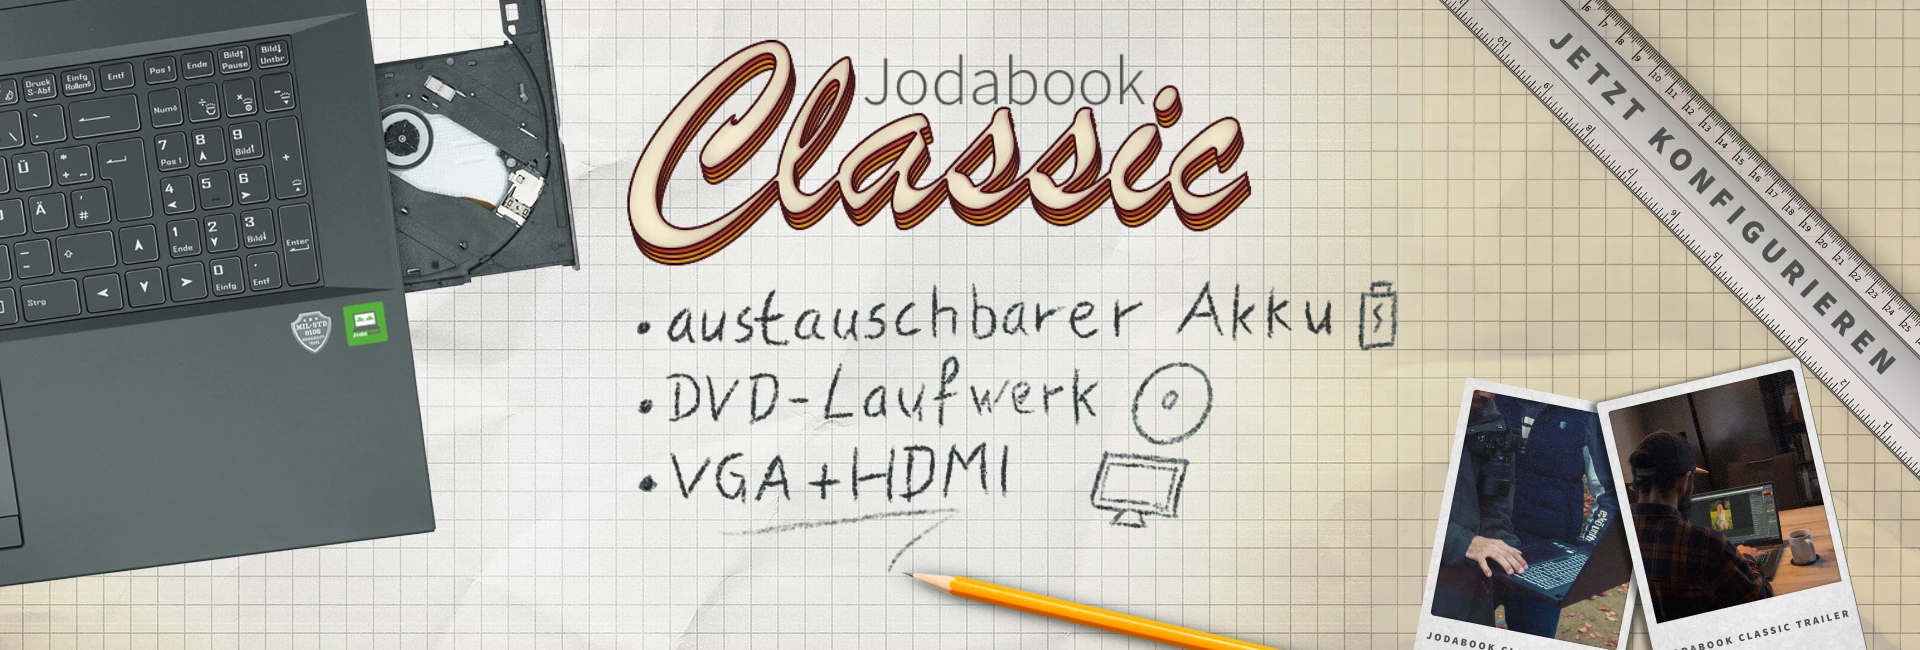 JodaBook Classic mit austauschbarem Akku, DVD Laufwerk und VGA und HDMI Anschluss